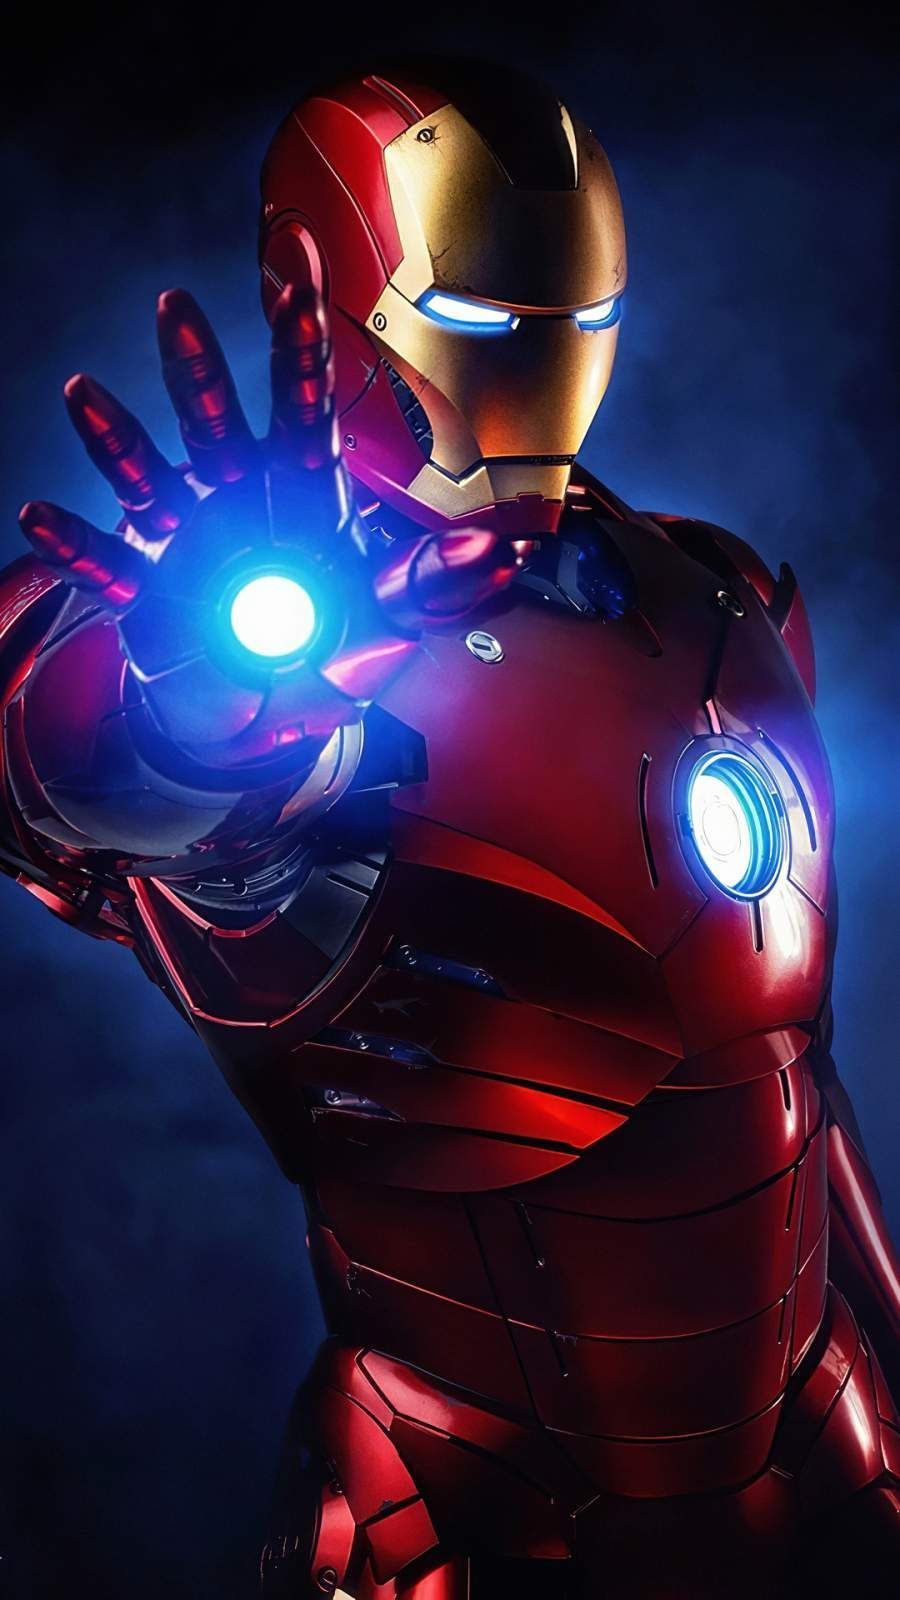 Trải nghiệm Iron Man 4K iPhone 12 Wallpapers để đắm chìm trong thế giới siêu anh hùng. Với độ phân giải cao và màu sắc sống động, hình ảnh cùng những công nghệ hiện đại giúp bạn đưa siêu anh hùng Iron Man trở thành một phần của thiết bị của mình.